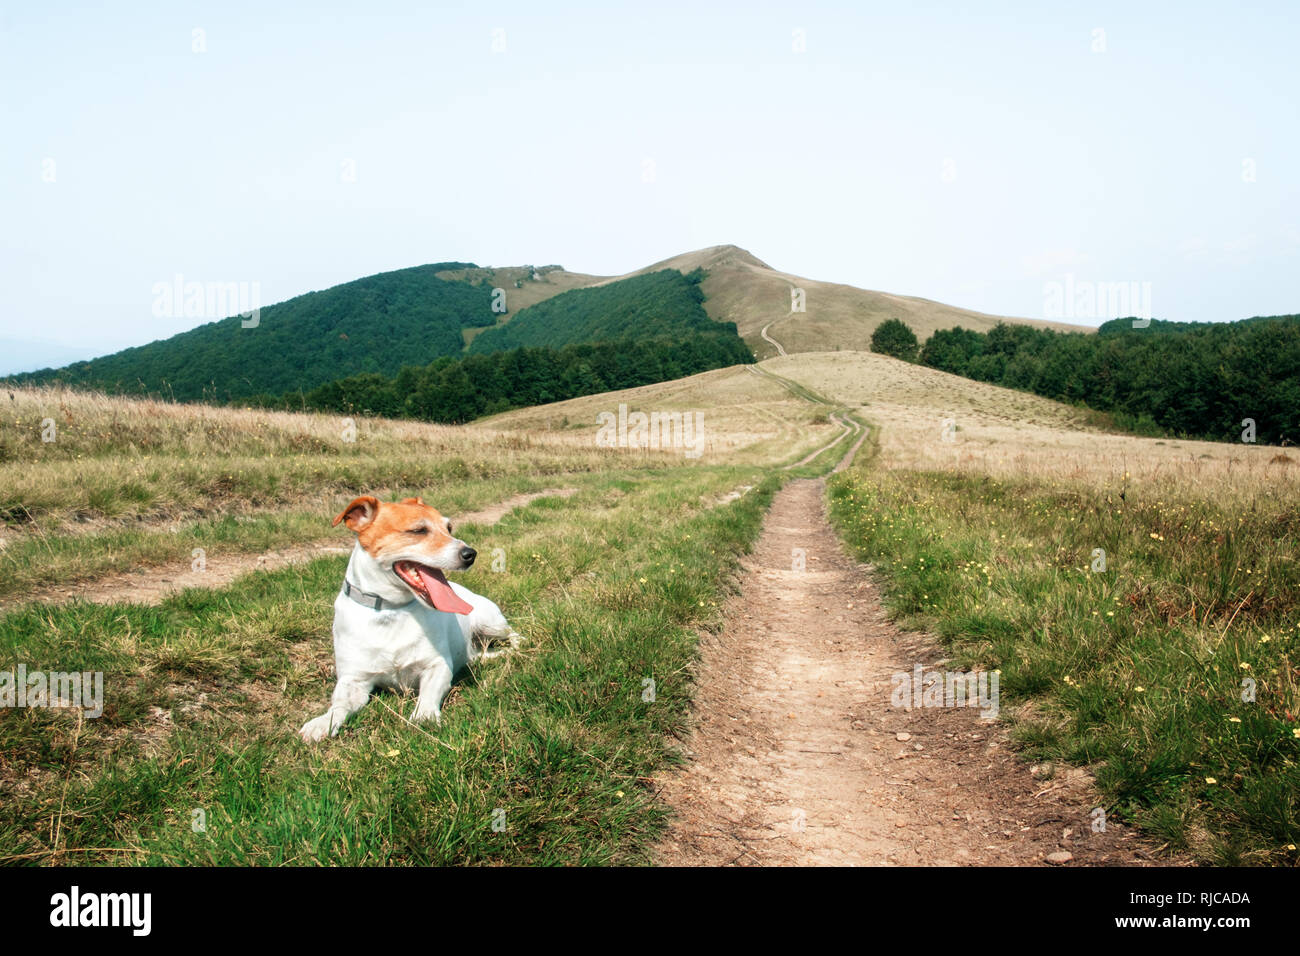 Seul chien blanc sur la route des montagnes dans le contexte d'un incroyable paysage de montagne. Concept de voyage Banque D'Images